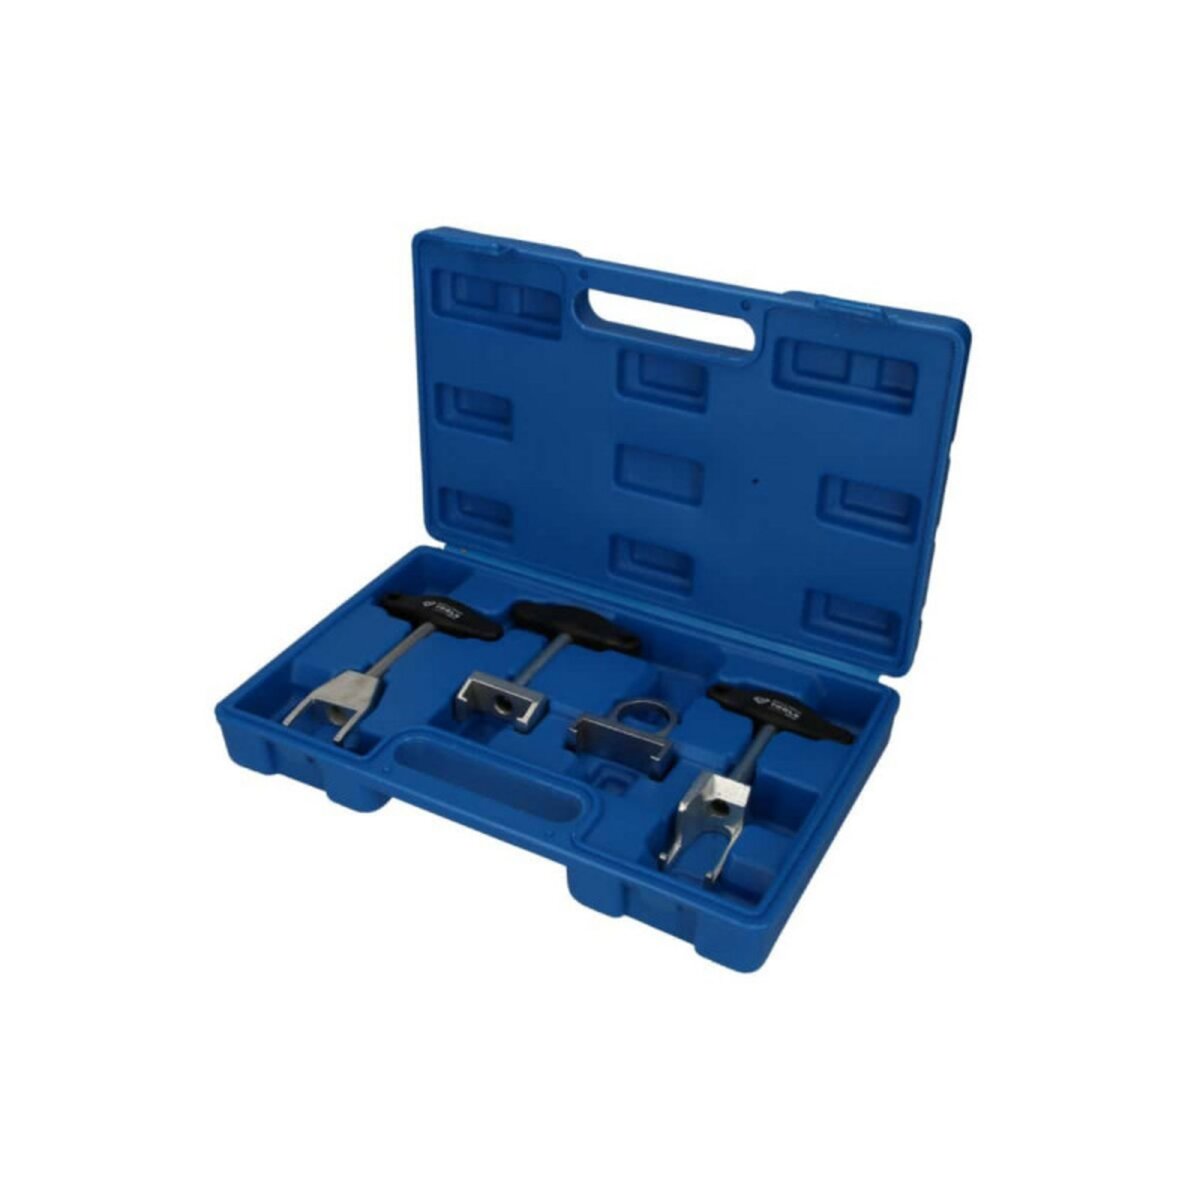  Kit d'outils BRILLIANT TOOLS pour démonter les bobines d'allumage pour VAG - 4pcs - BT561000